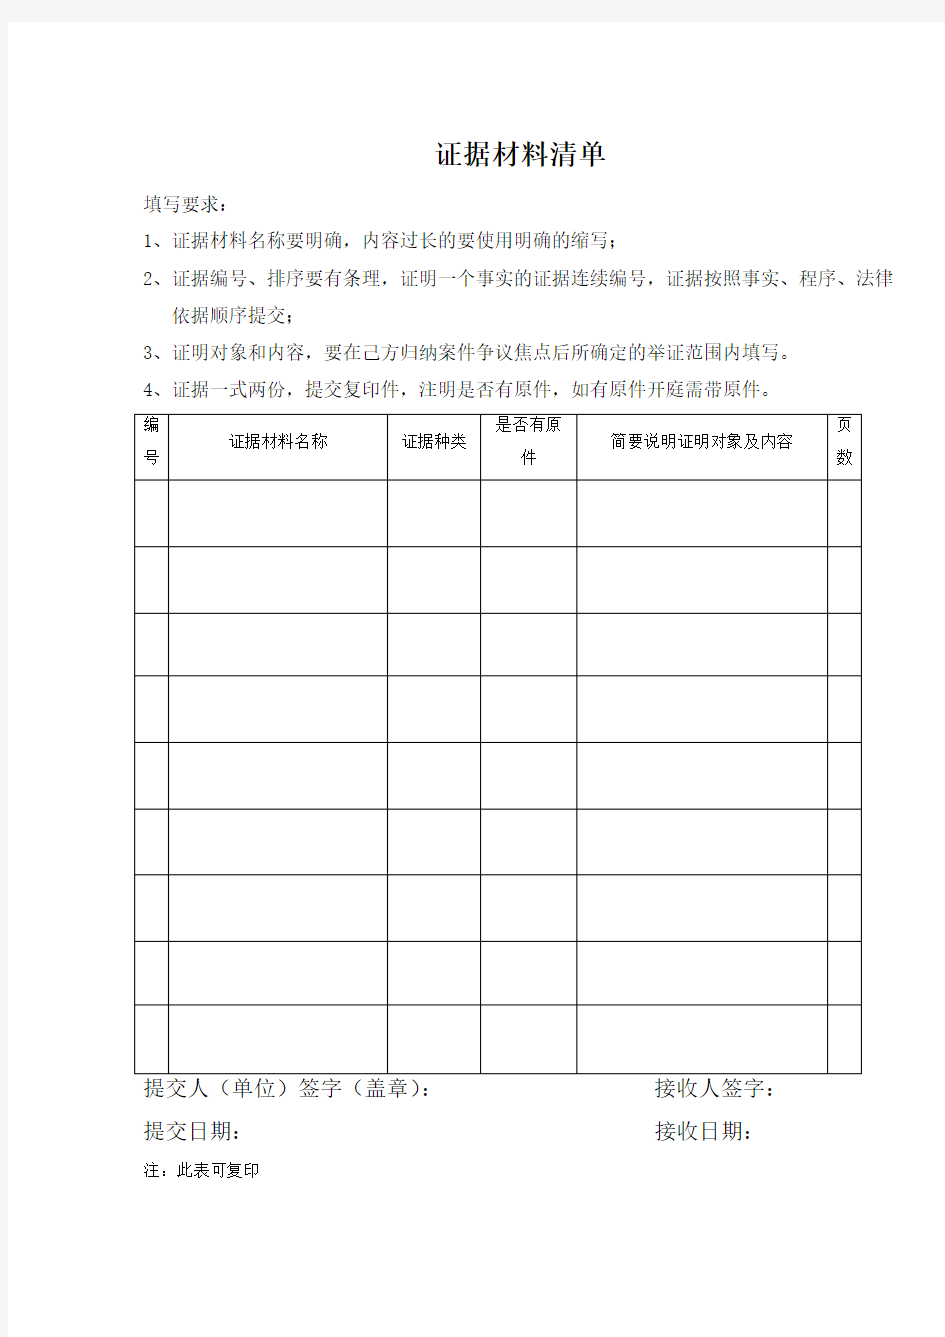 劳动仲裁证据材料清单(北京朝阳)